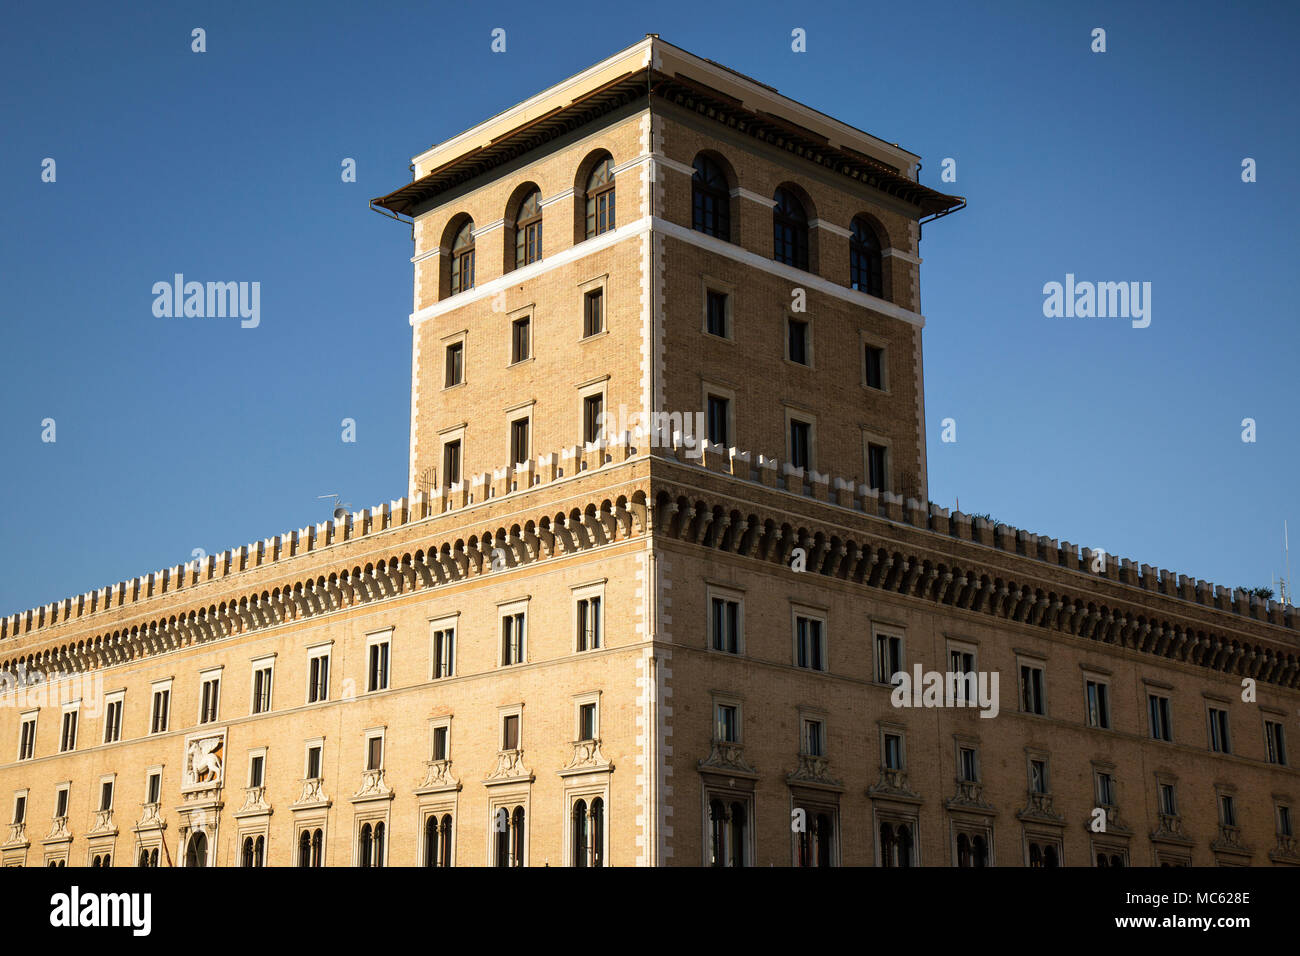 Die Assicurazioni Generali Gebäude auf der Piazza Venezia, Rom, Italien. Es wurde 1906-1911 erbaut, den Löwen des Hl. Markus (das Wahrzeichen von Venedig) auf dem facad Stockfoto